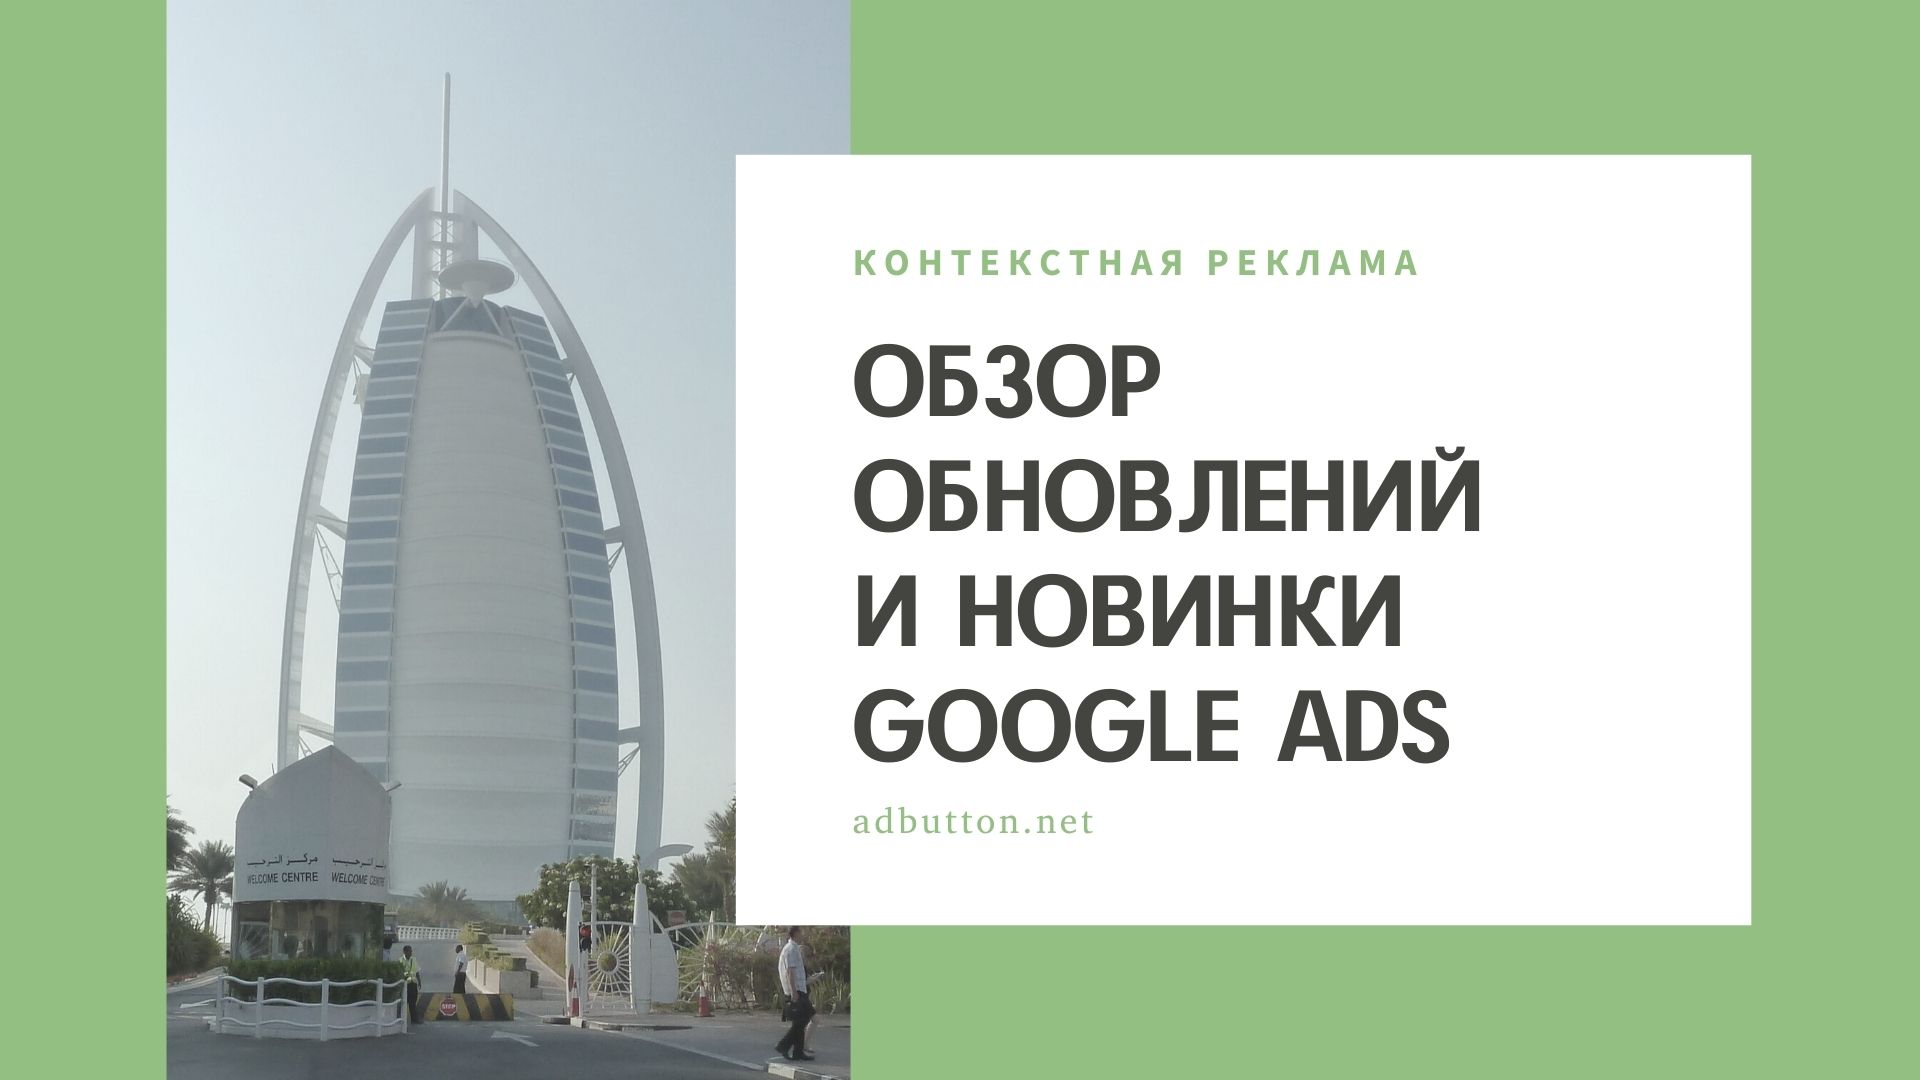 Обзор обновлений и новинки Google Ads, появившиеся в 2020 году